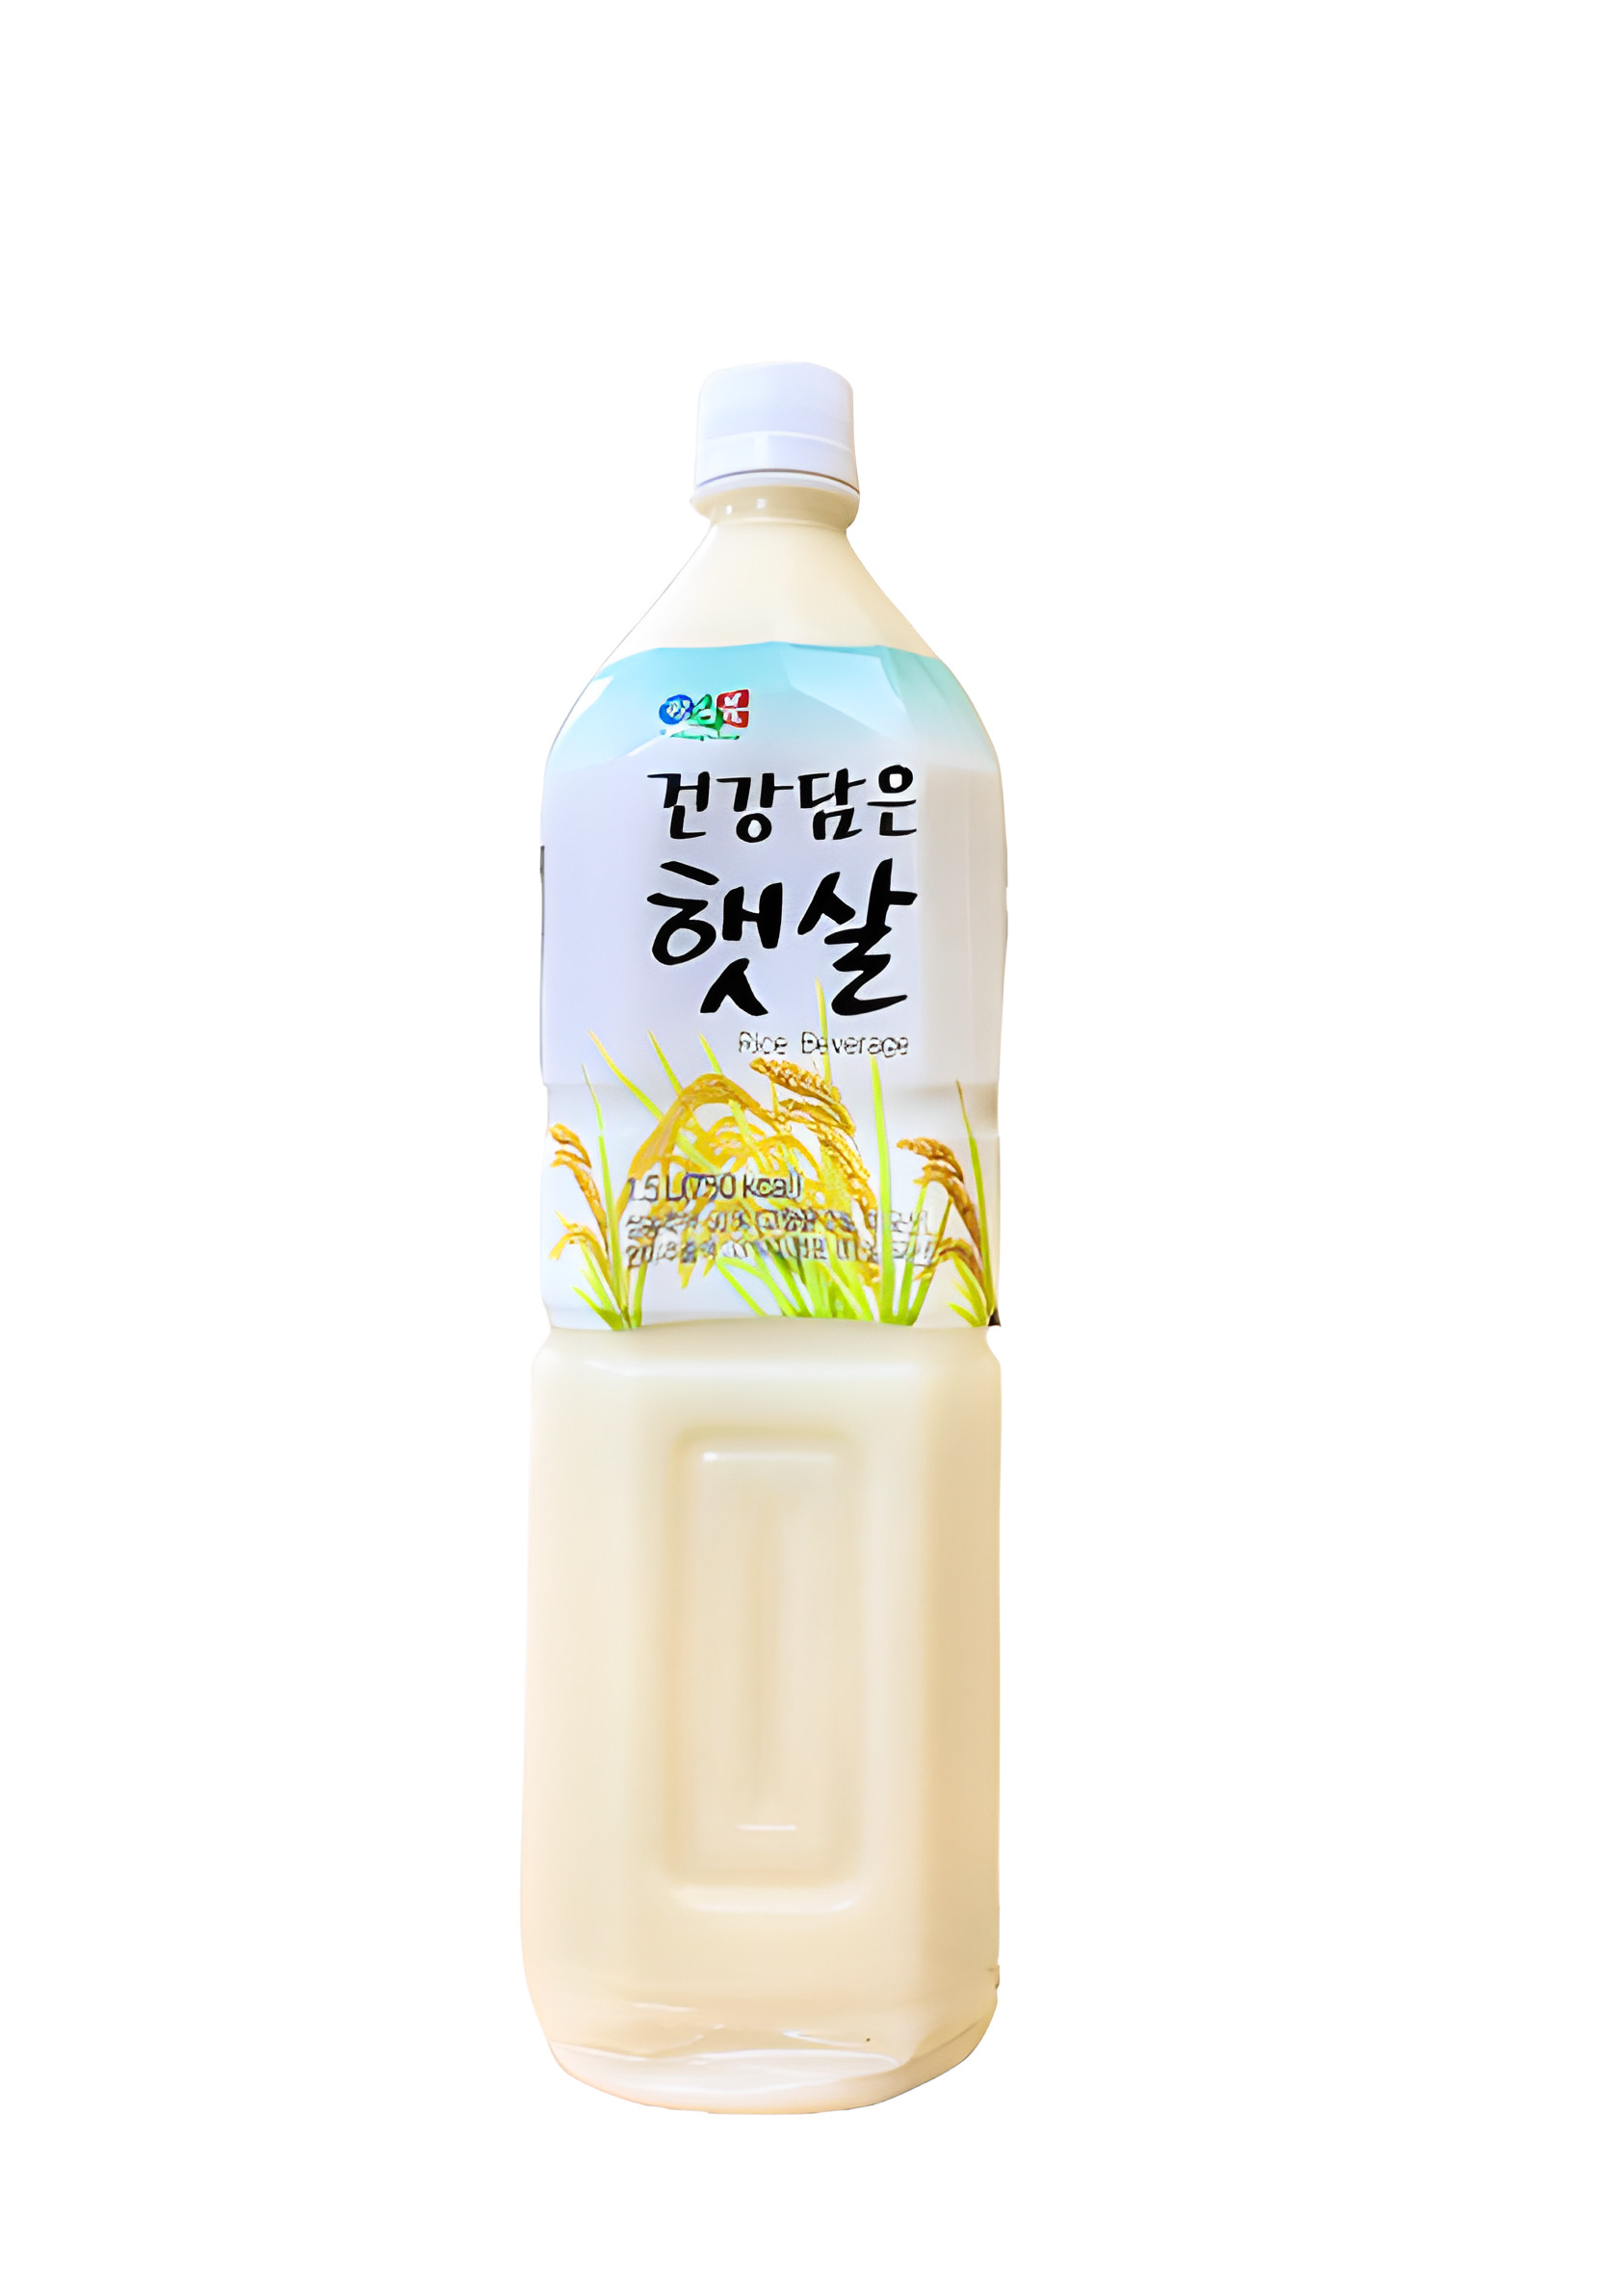 Nước gạo Hàn Quốc Vegemil 1.5L